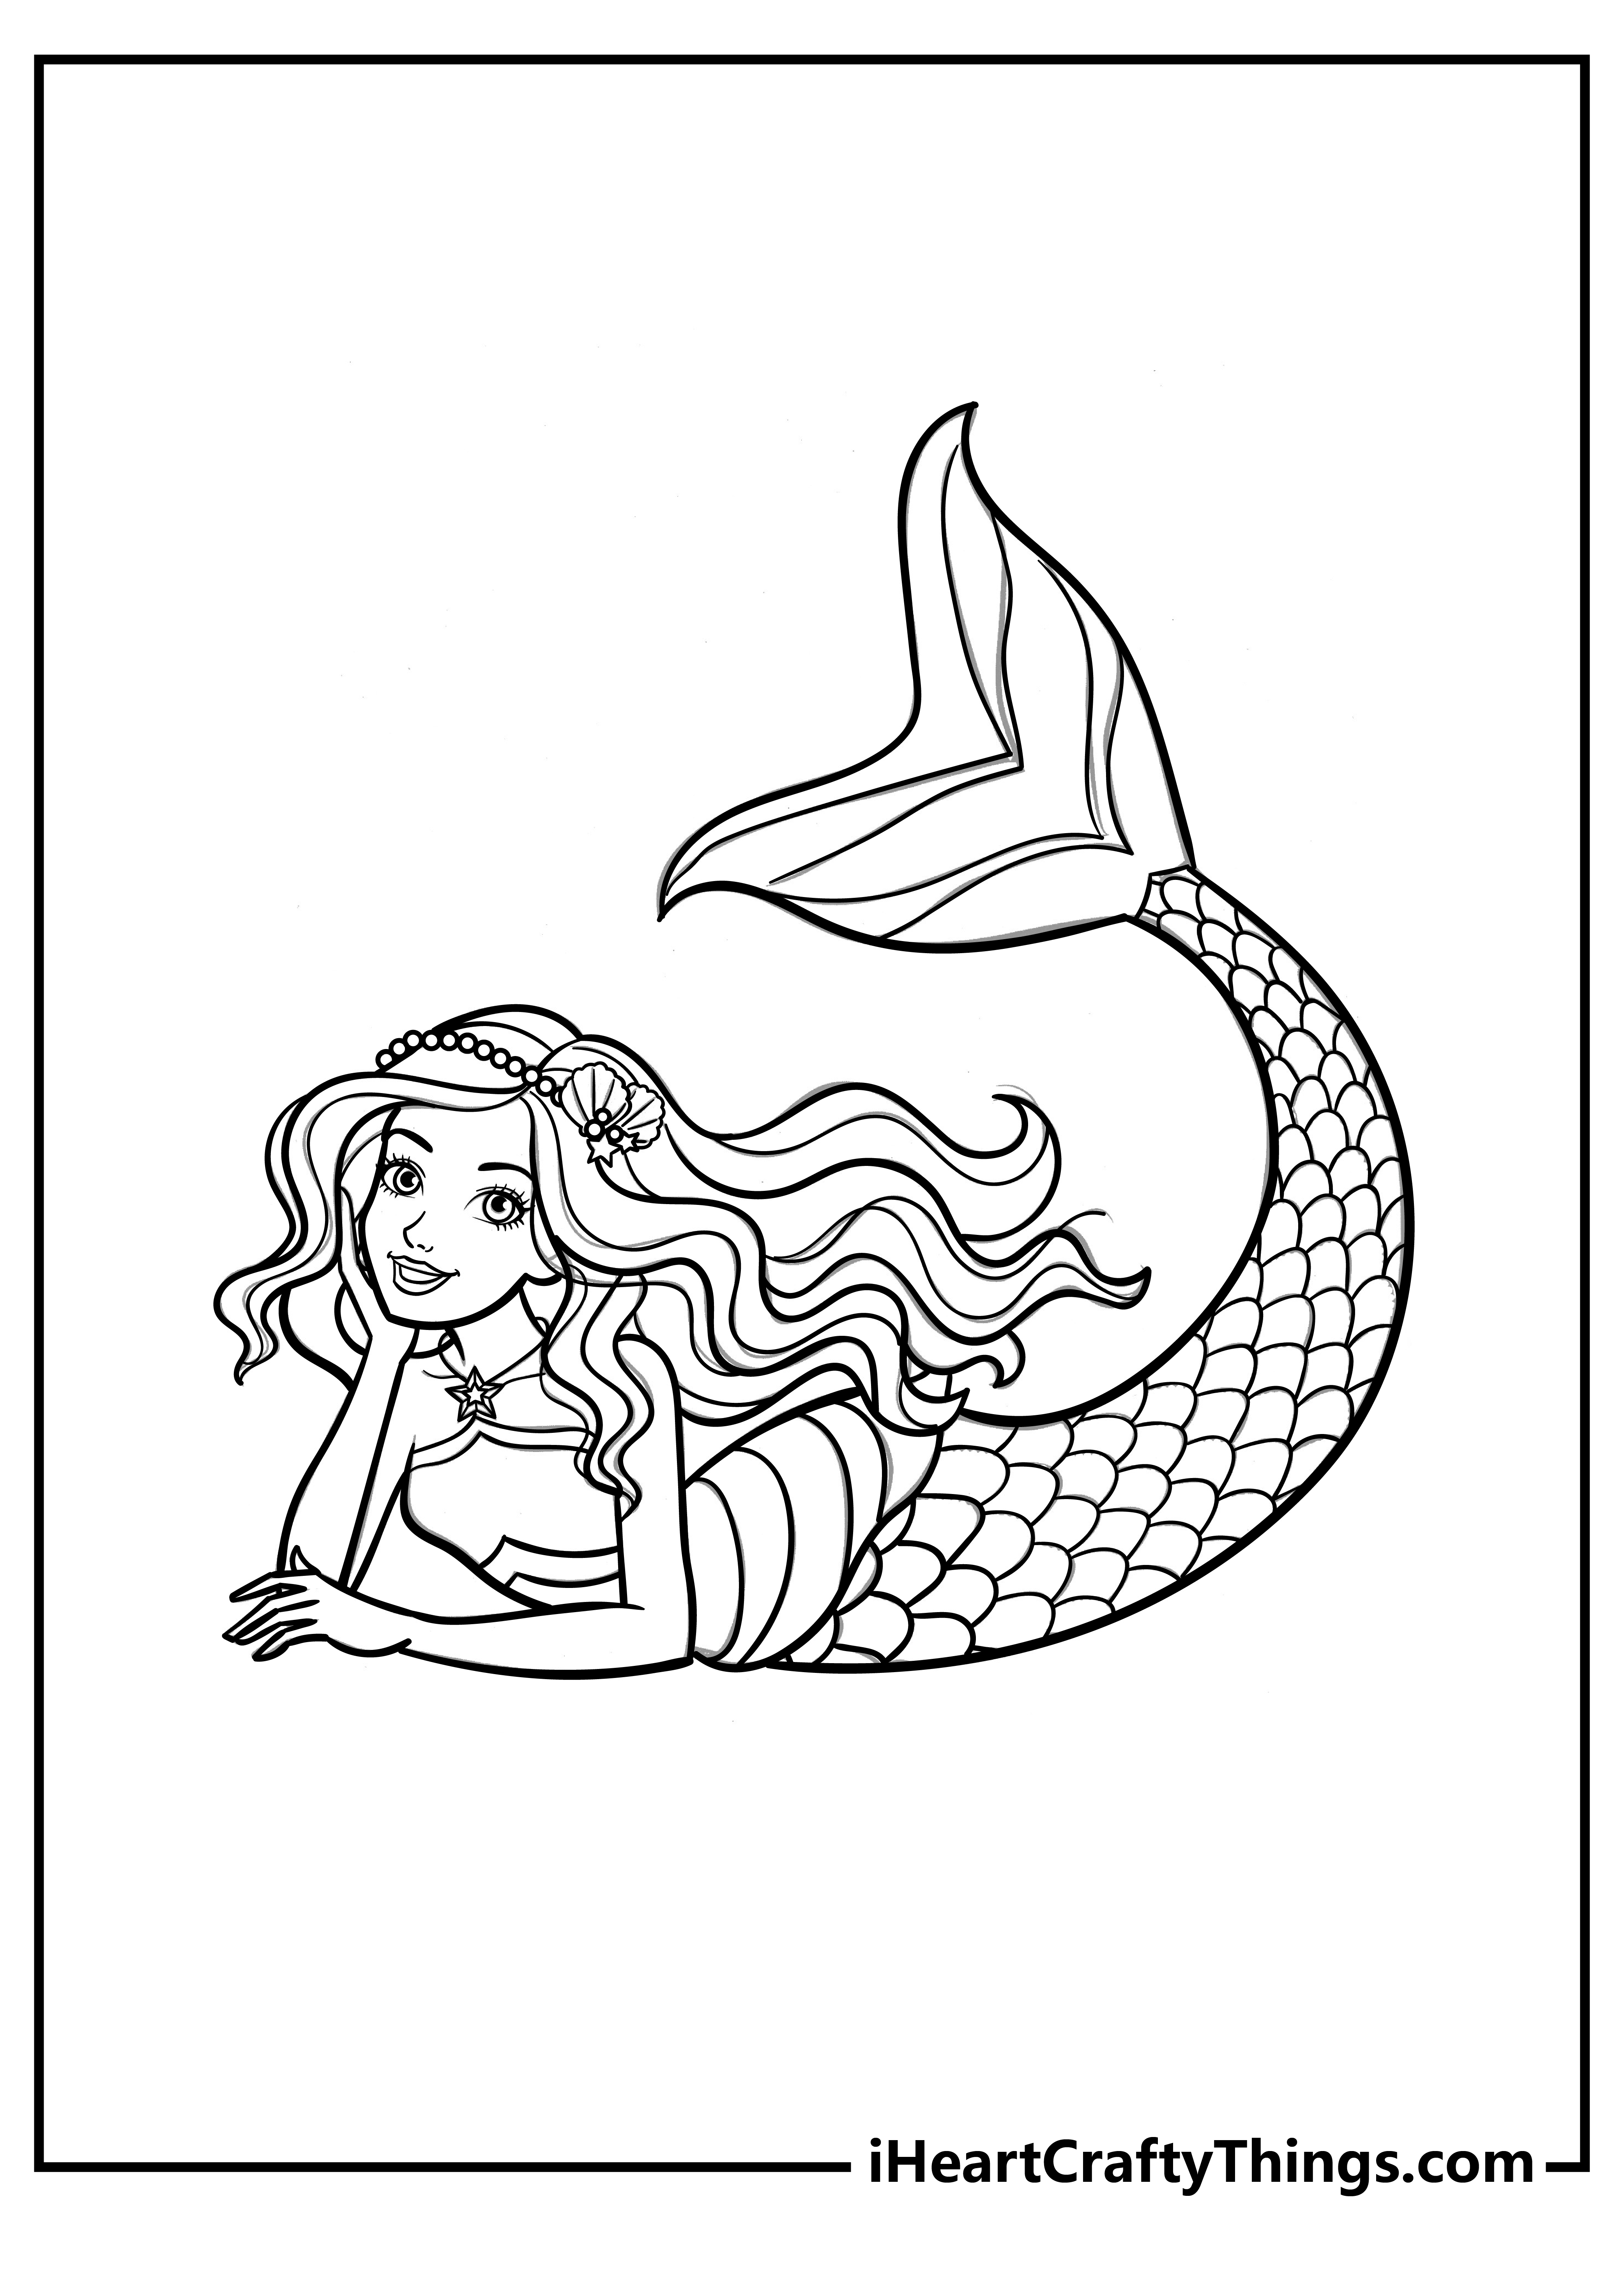 Barbie mermaid coloring pages free printables